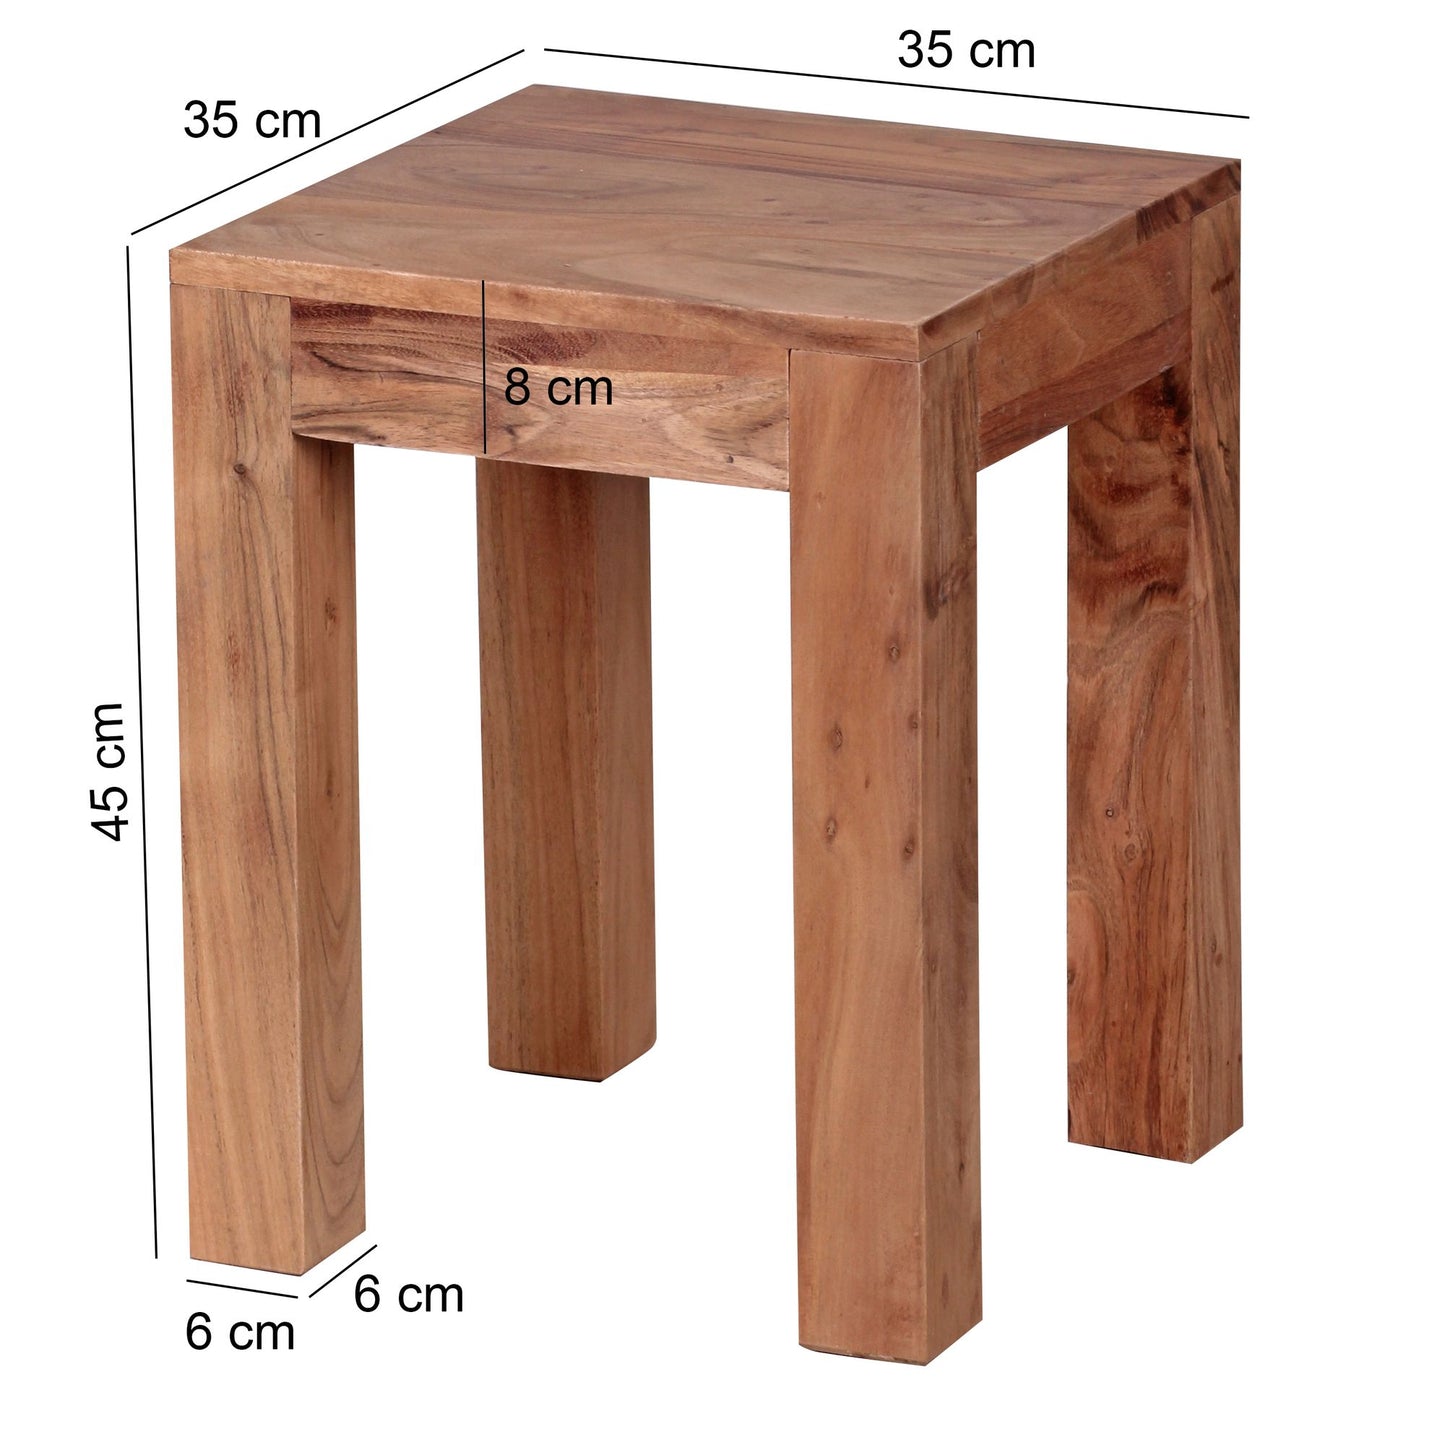 Table d'appoint Allouez de Nancy - Bois d'acacia - Table basse - Tables d'appoint - 35 x 35 x 45 cm